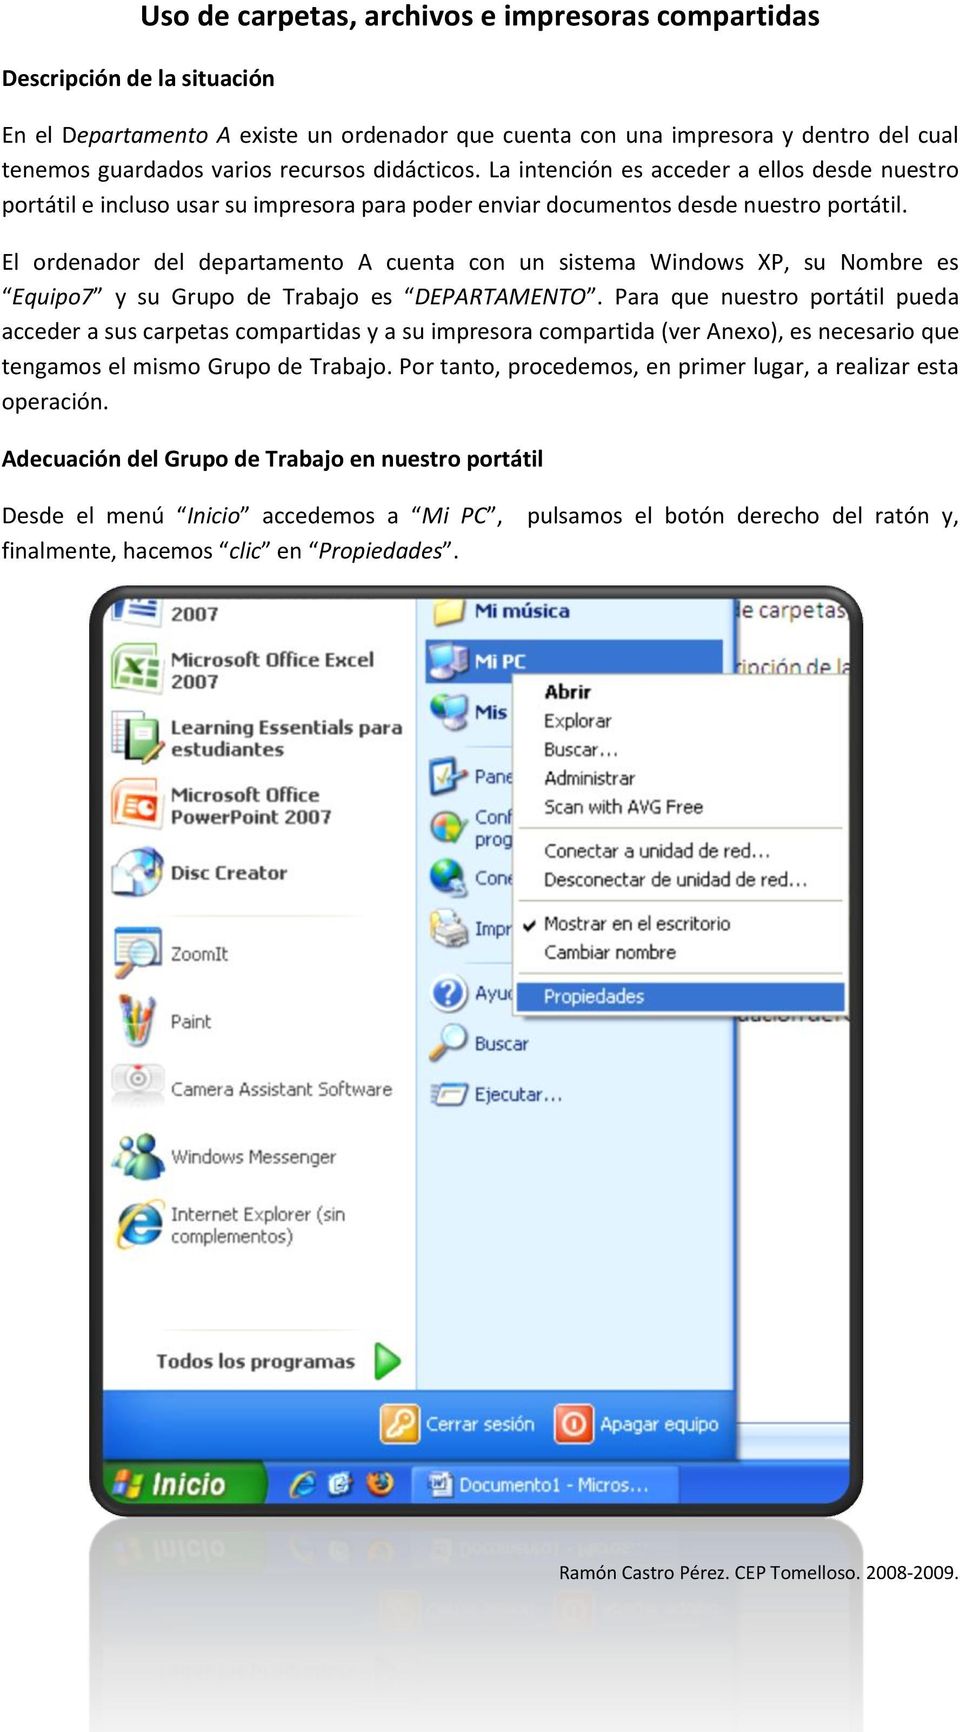 El ordenador del departamento A cuenta con un sistema Windows XP, su Nombre es Equipo7 y su Grupo de Trabajo es DEPARTAMENTO.